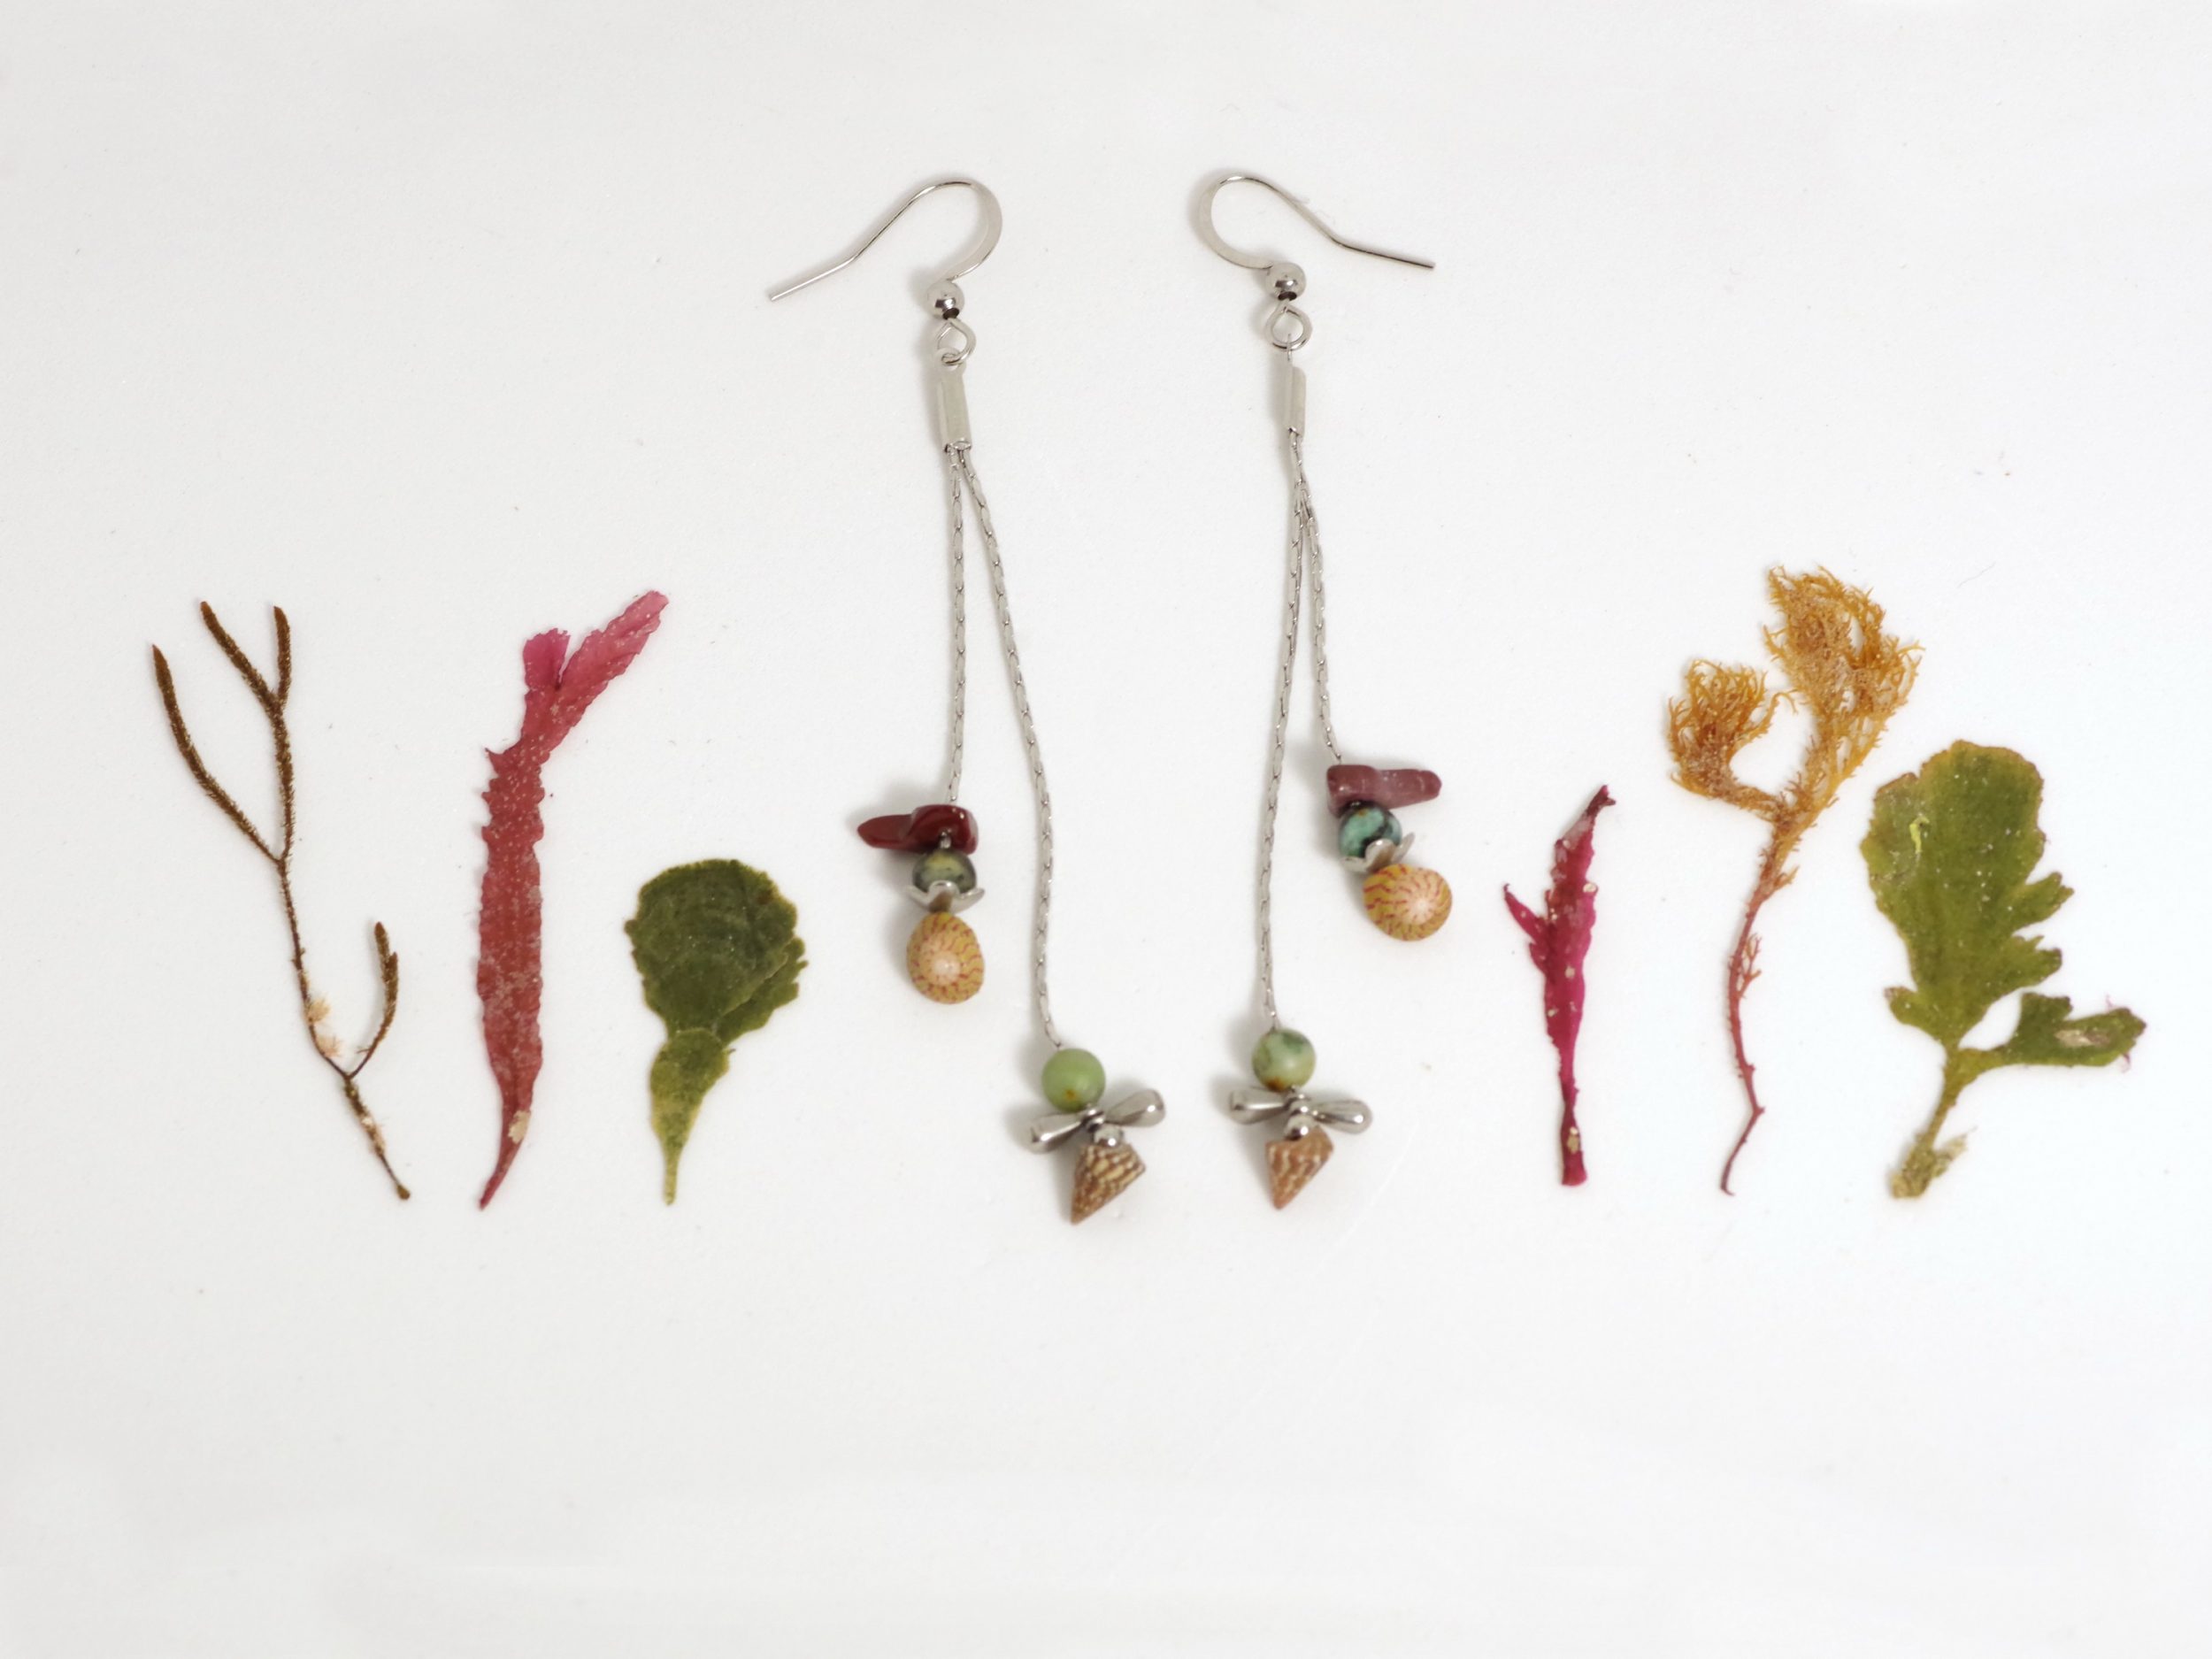 Boucles d'oreilles avec gemmes et coquillages de couleur brun brique et turquoise sur de fines chaînes en iinox, look épuré, style minimaliste